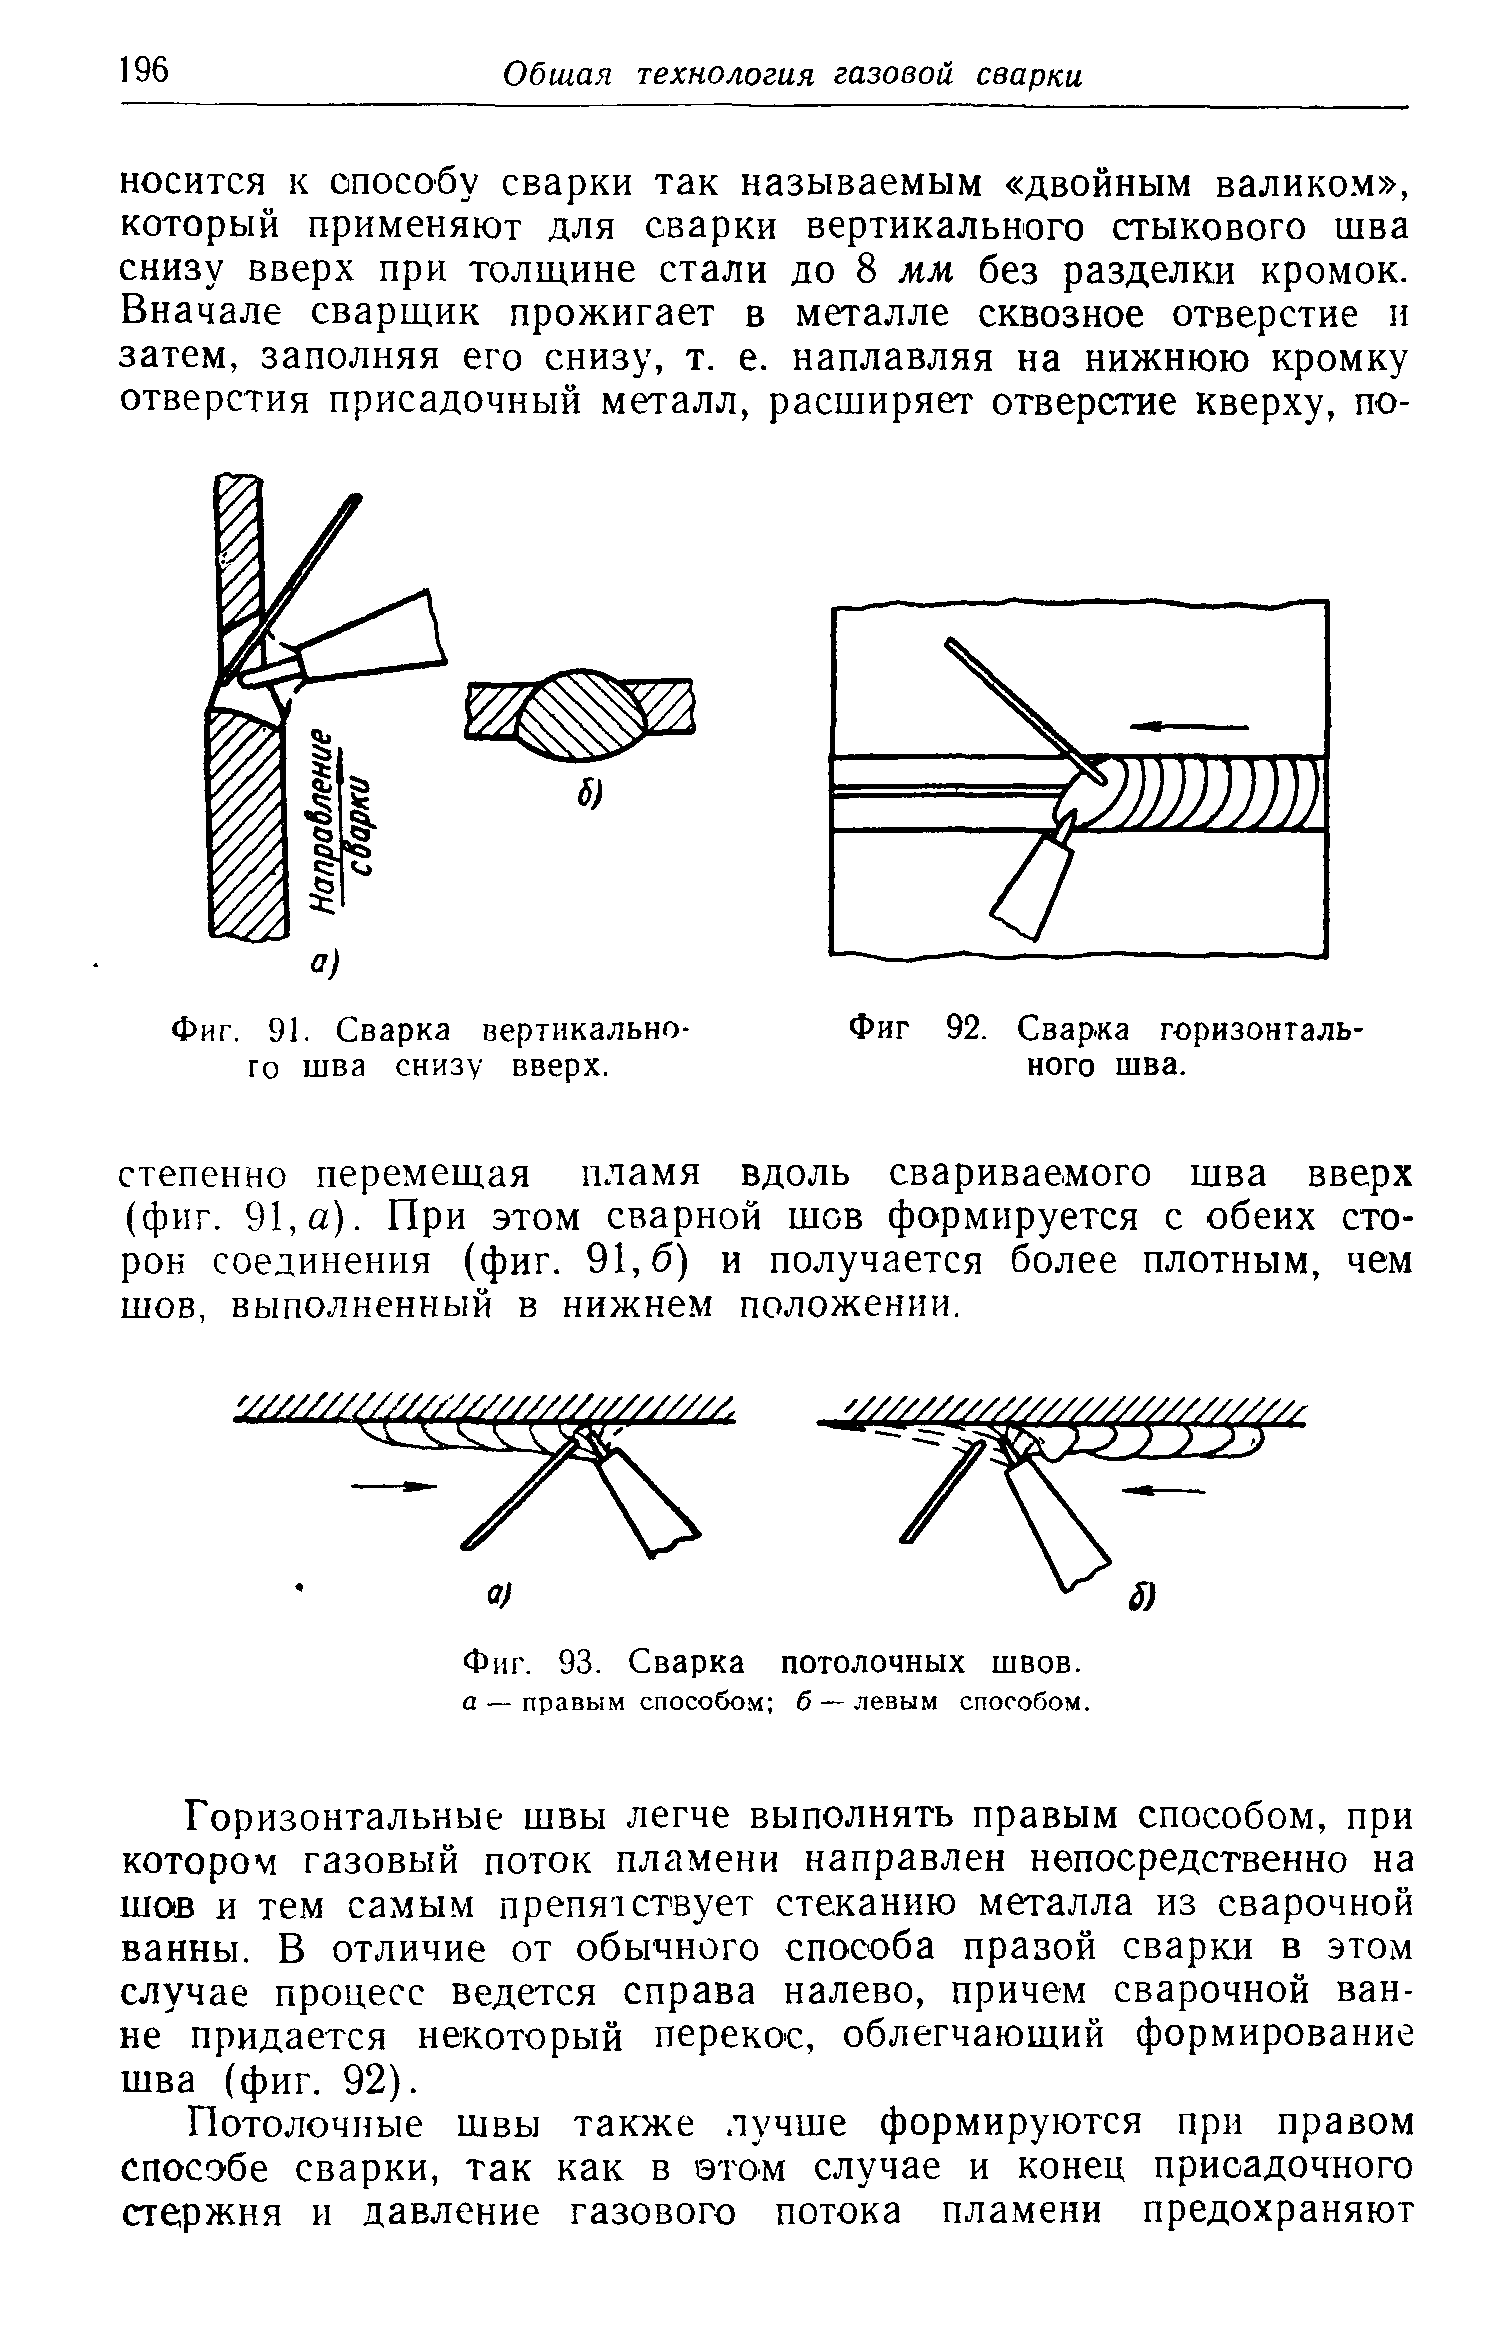 Техника ручной дуговой сварки труб покрытыми электродами